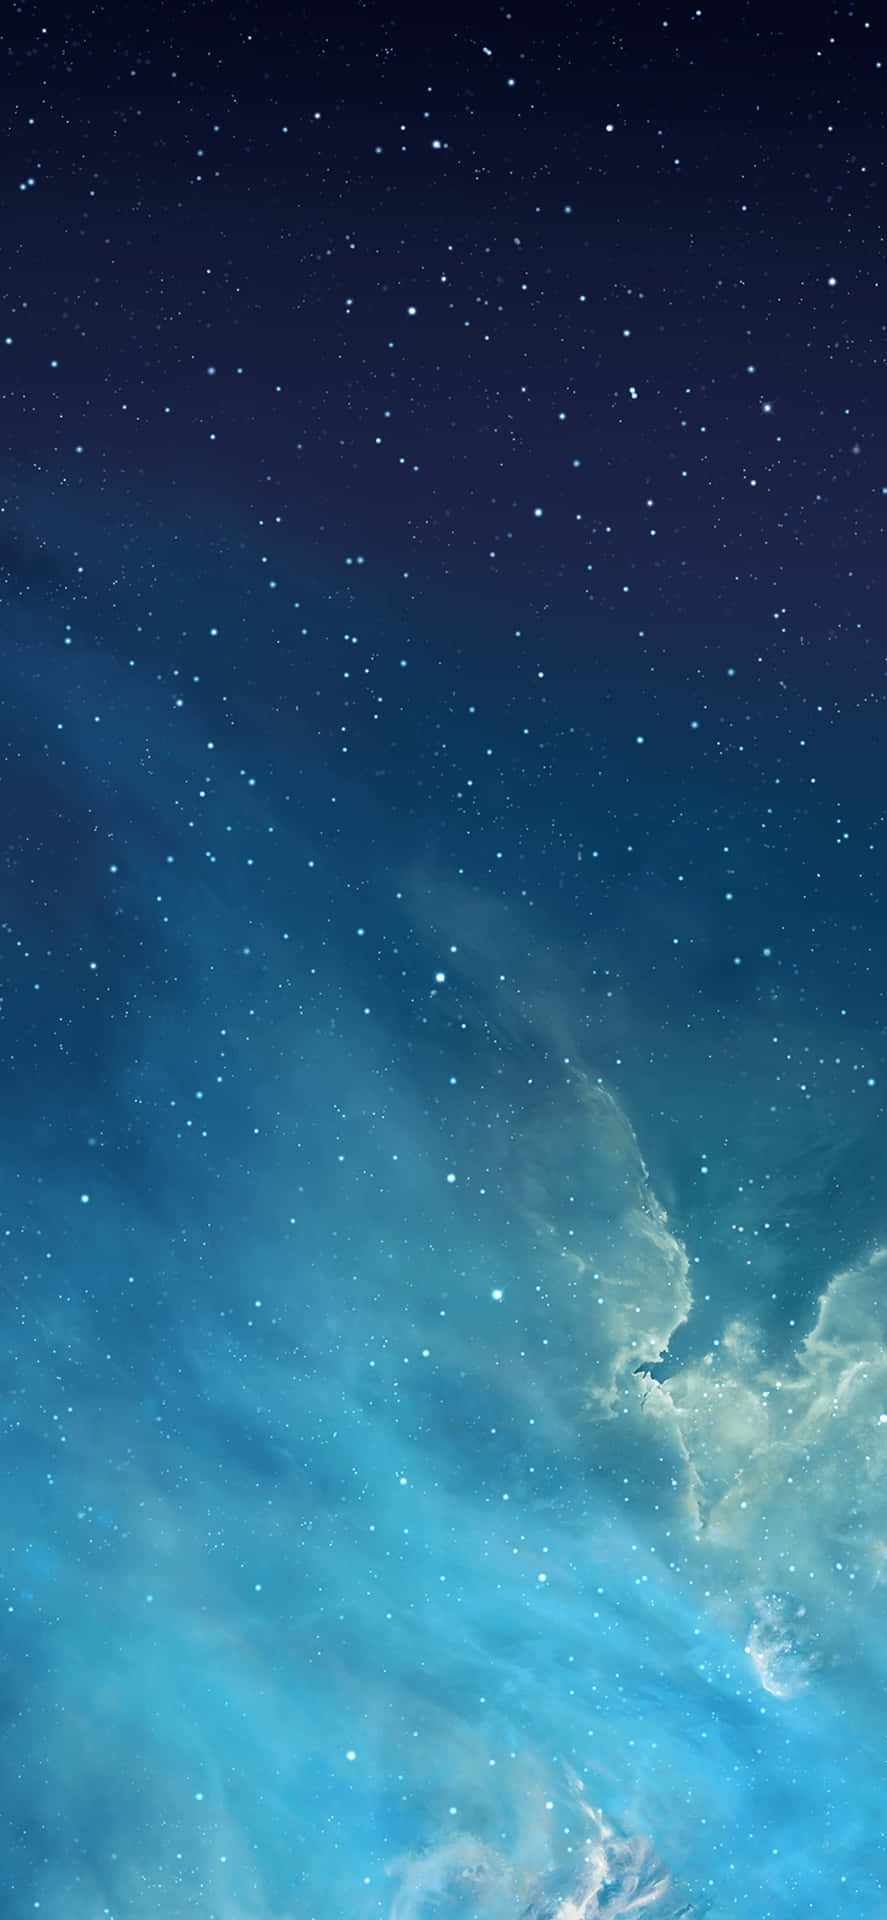 iPhone 6s Default Starry Sky Wallpaper